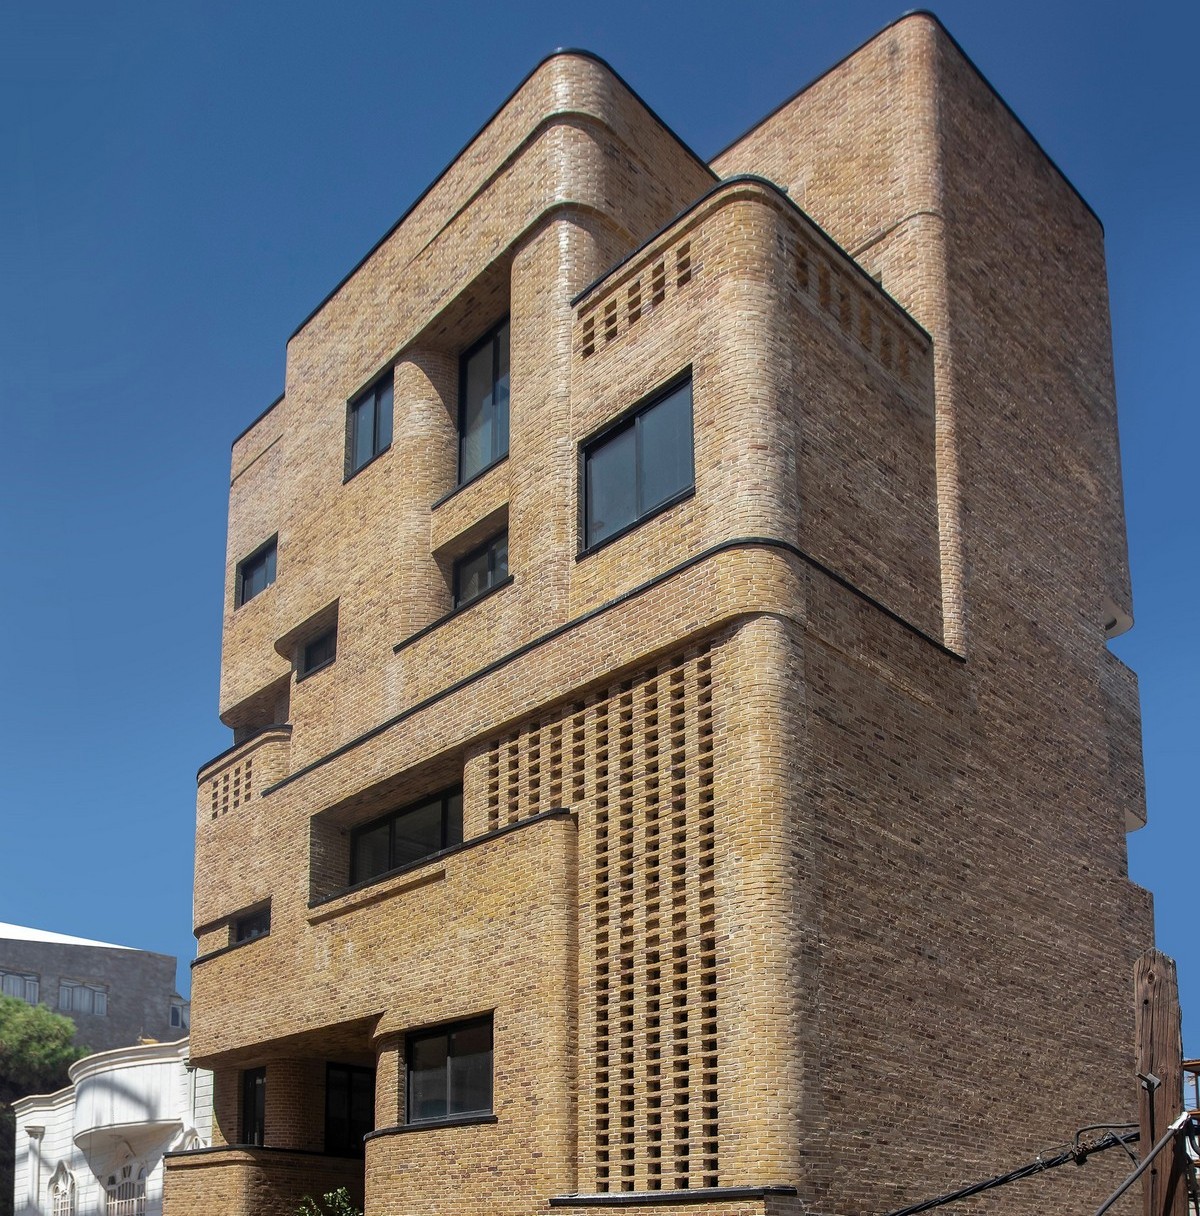 Многоквартирный жилой дом с креативным дизайном в Иране